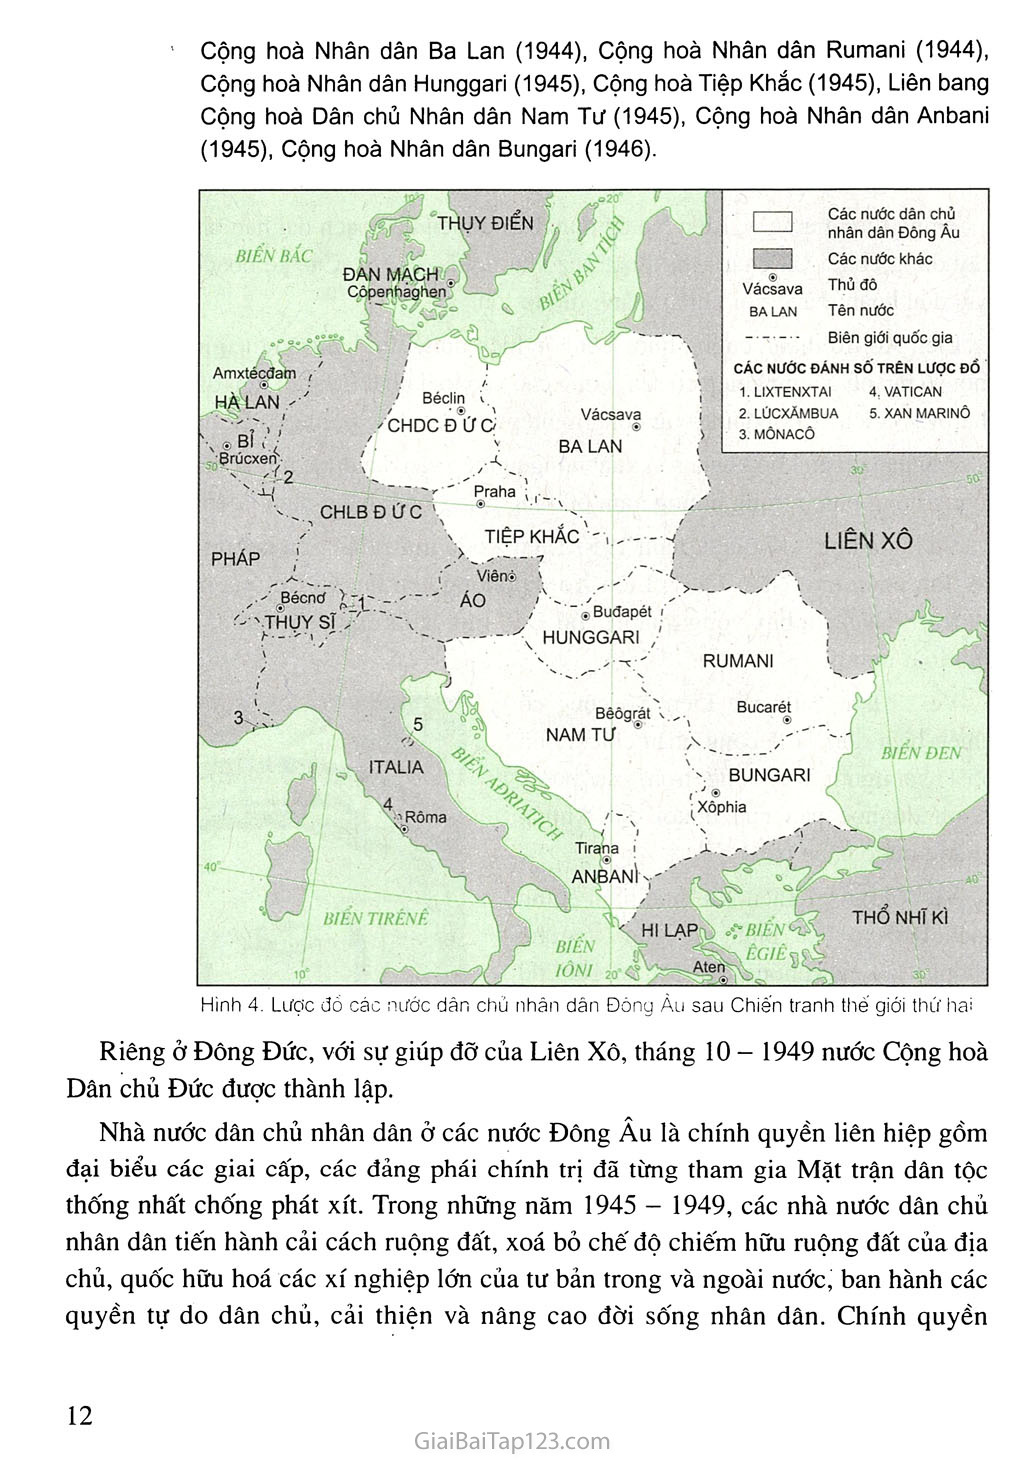 Bài 2. Liên Xô và các nước Đông Âu (1945 - 1991). Liên bang Nga (1991 - 2000) trang 3